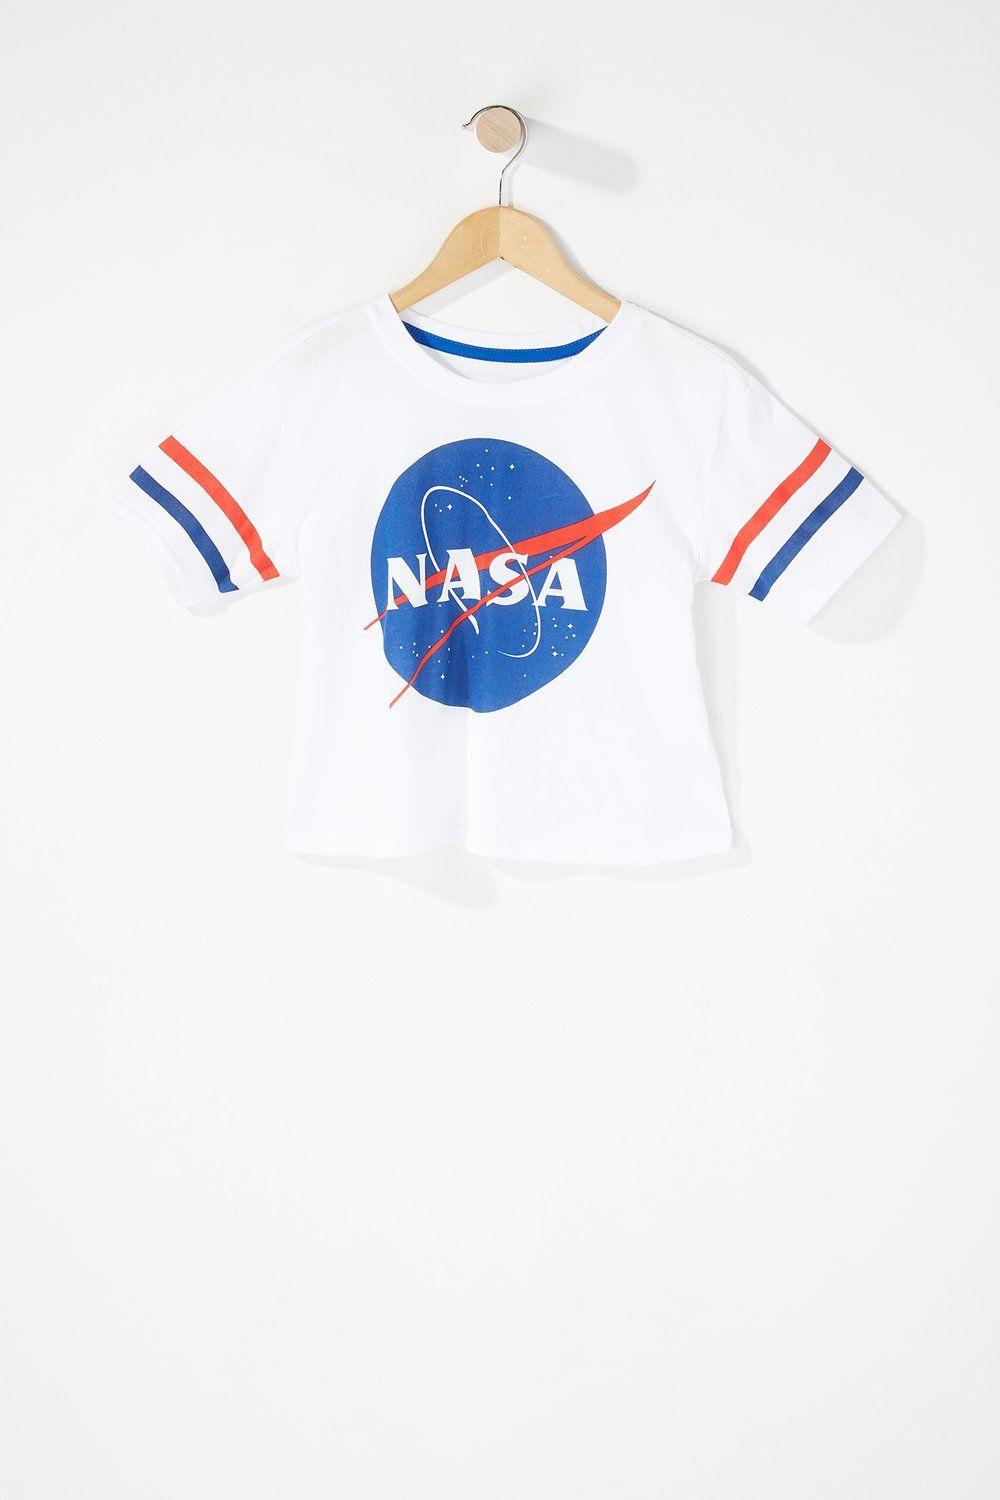 NASA Girl Logo - Girls Fashion Nasa Graphic T-Shirt | Urban Planet